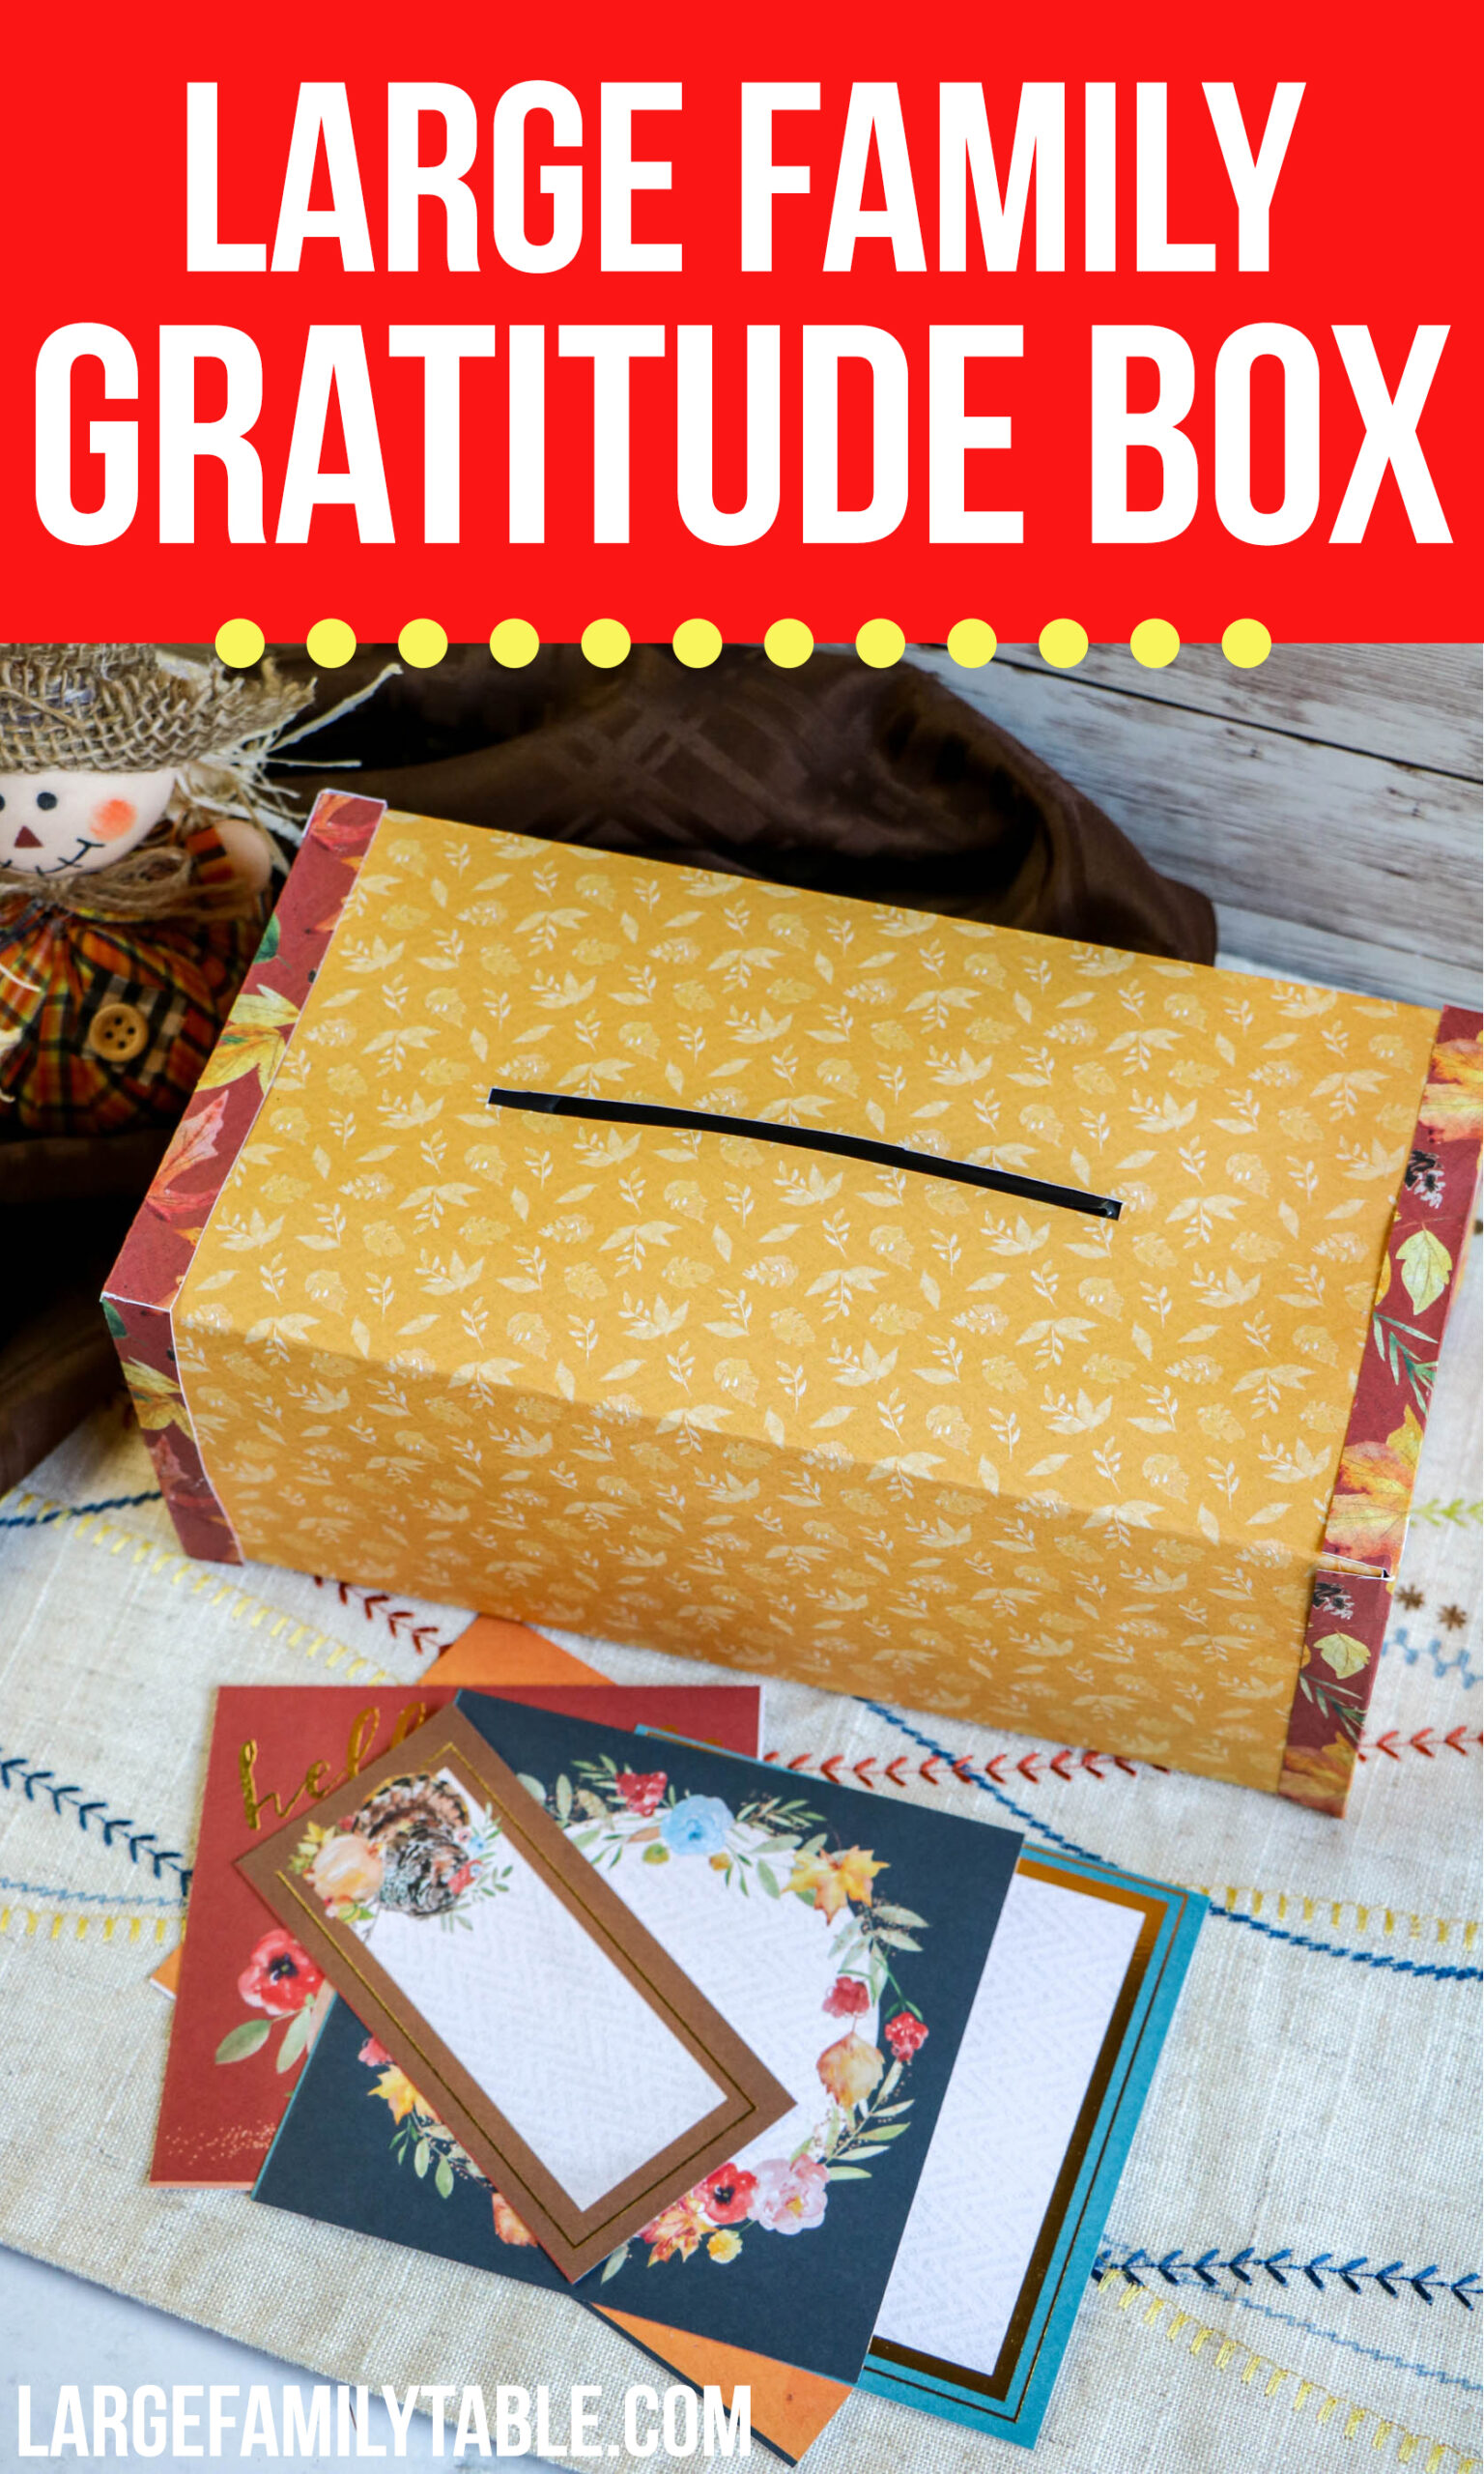 gratitude Box